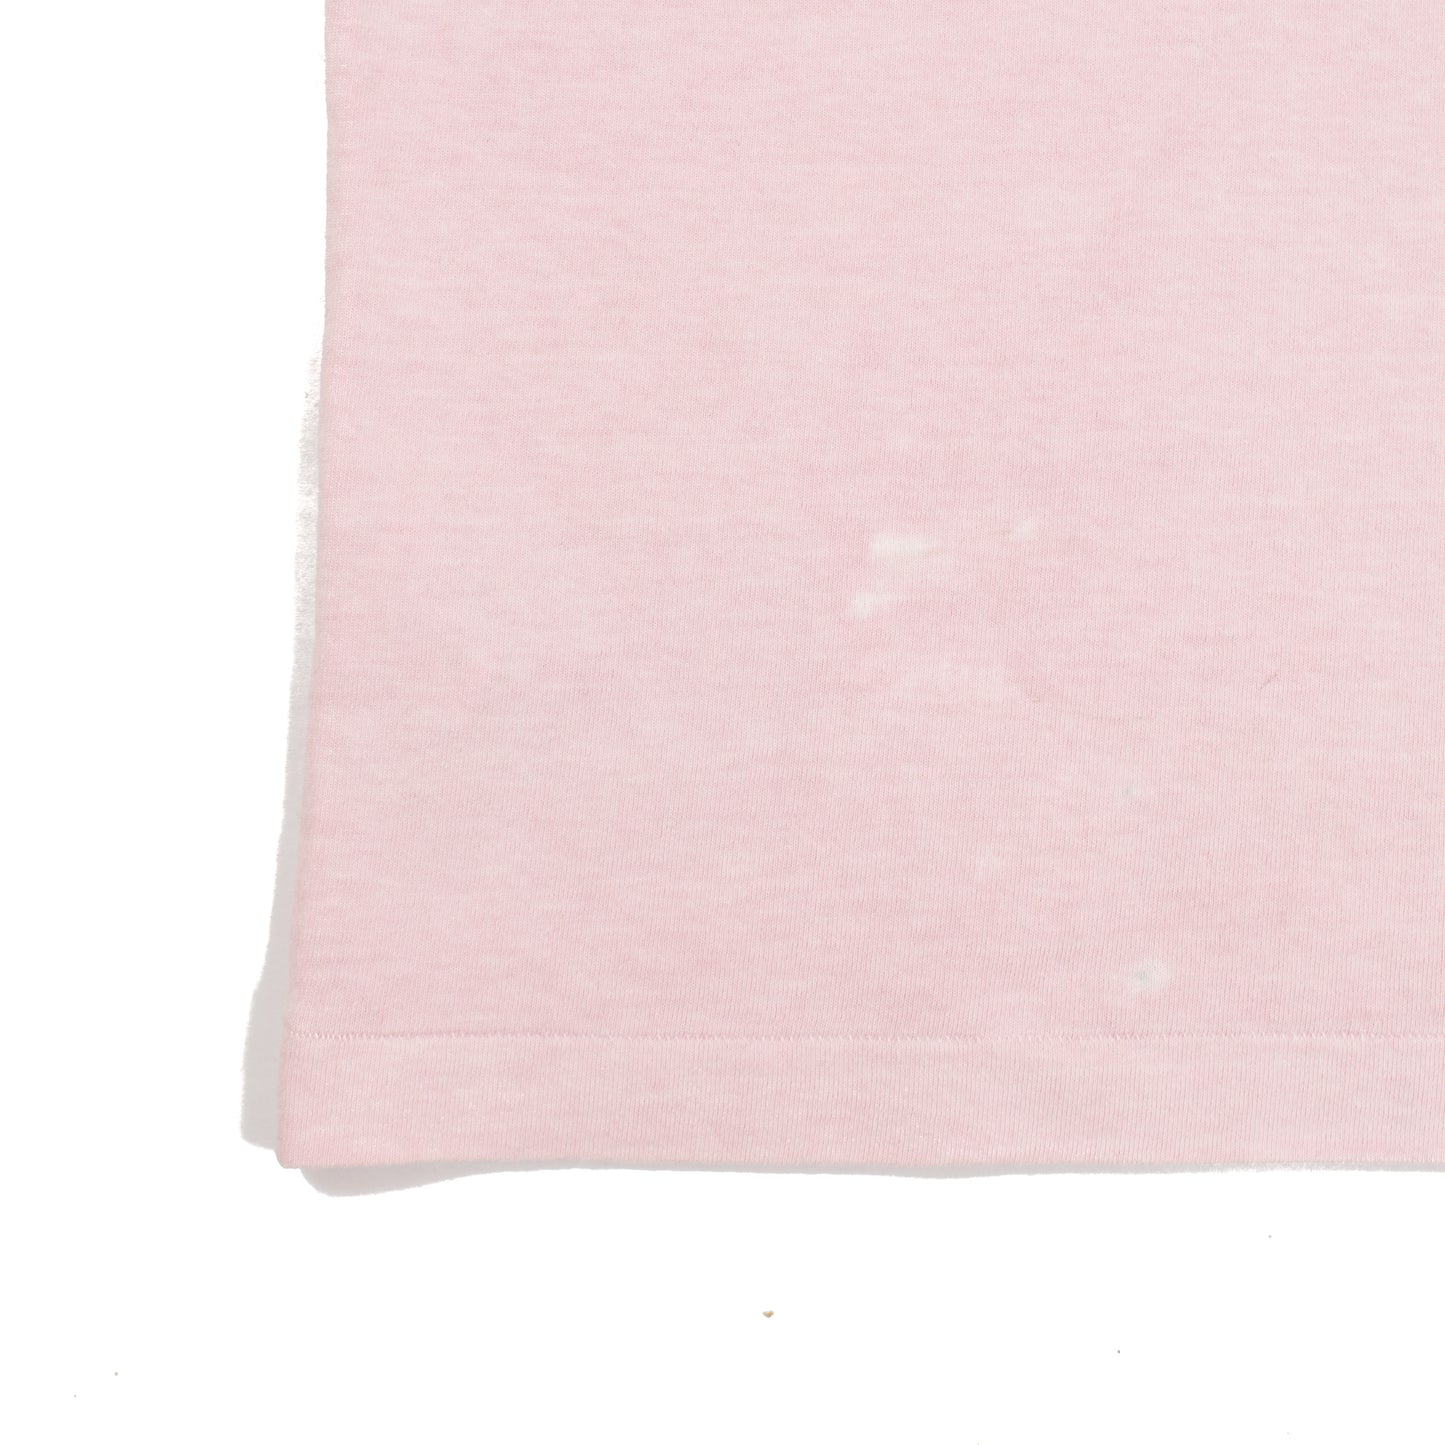 Cav Empt Pink Overdye T-Shirt (2016FW)